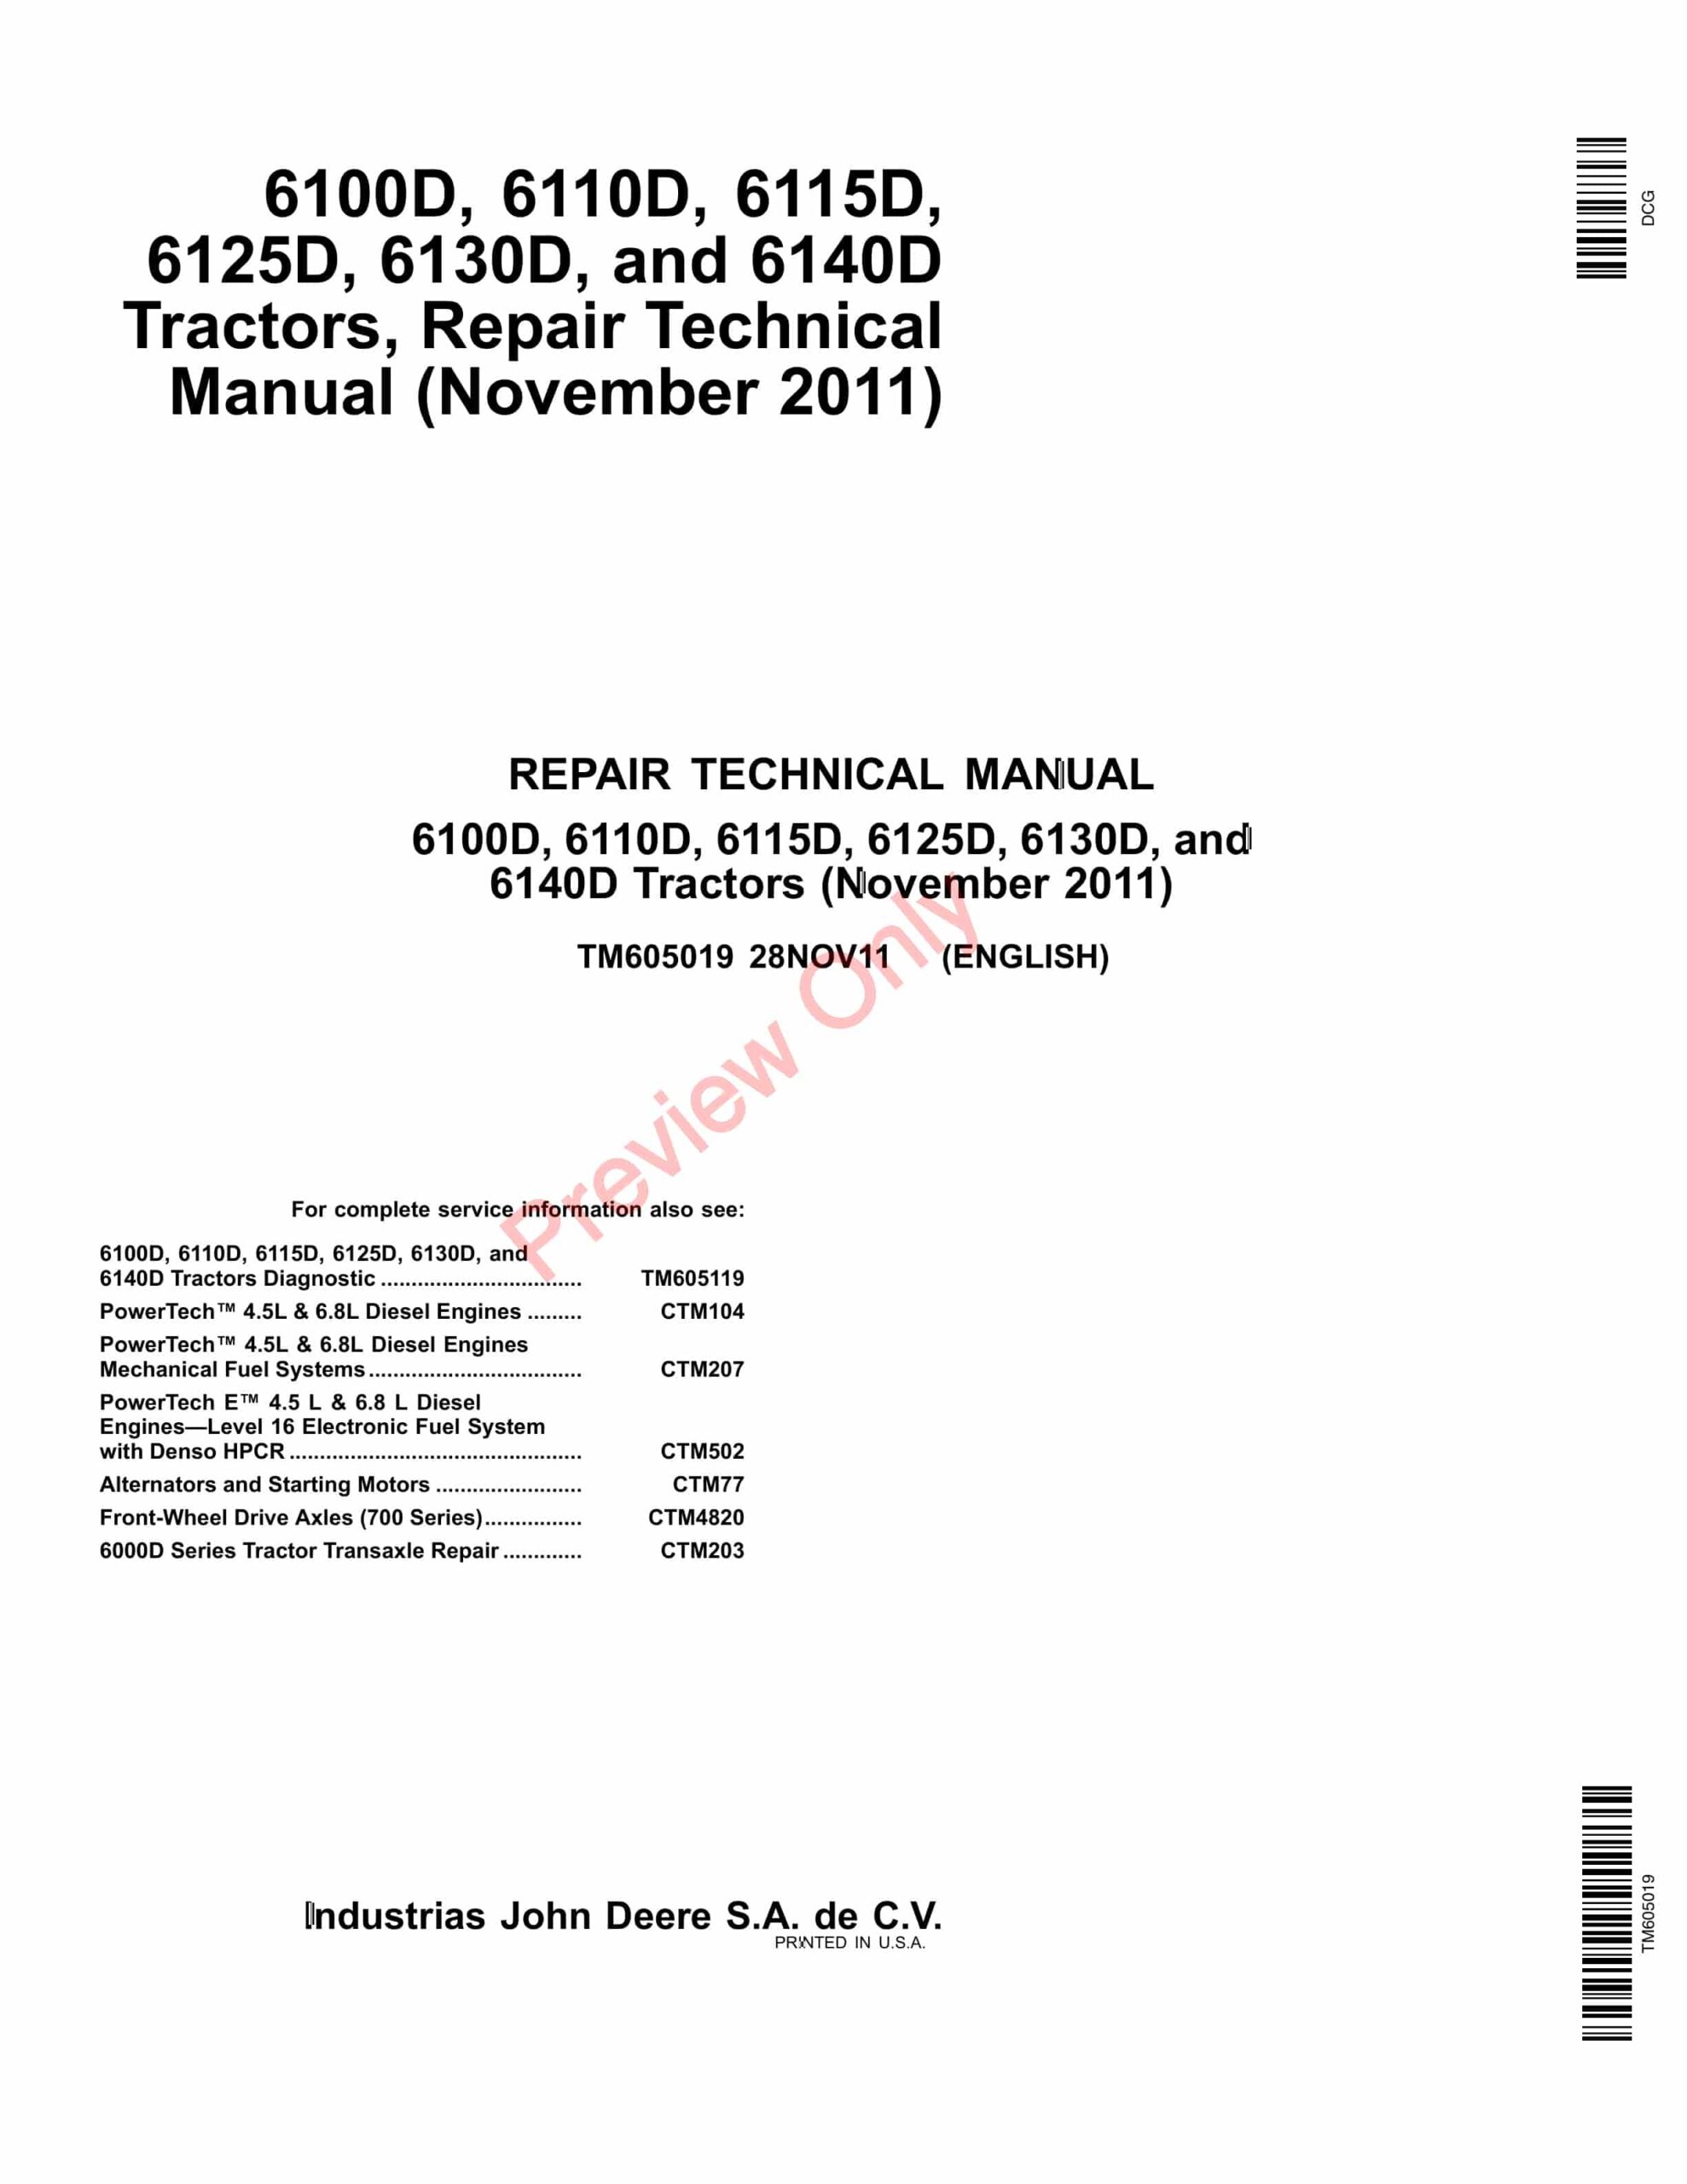 John Deere 6100D, 6110D, 6115D, 6125D, 6130D and 6140D Tractor Repair Technical Manual TM605019 28NOV11-1